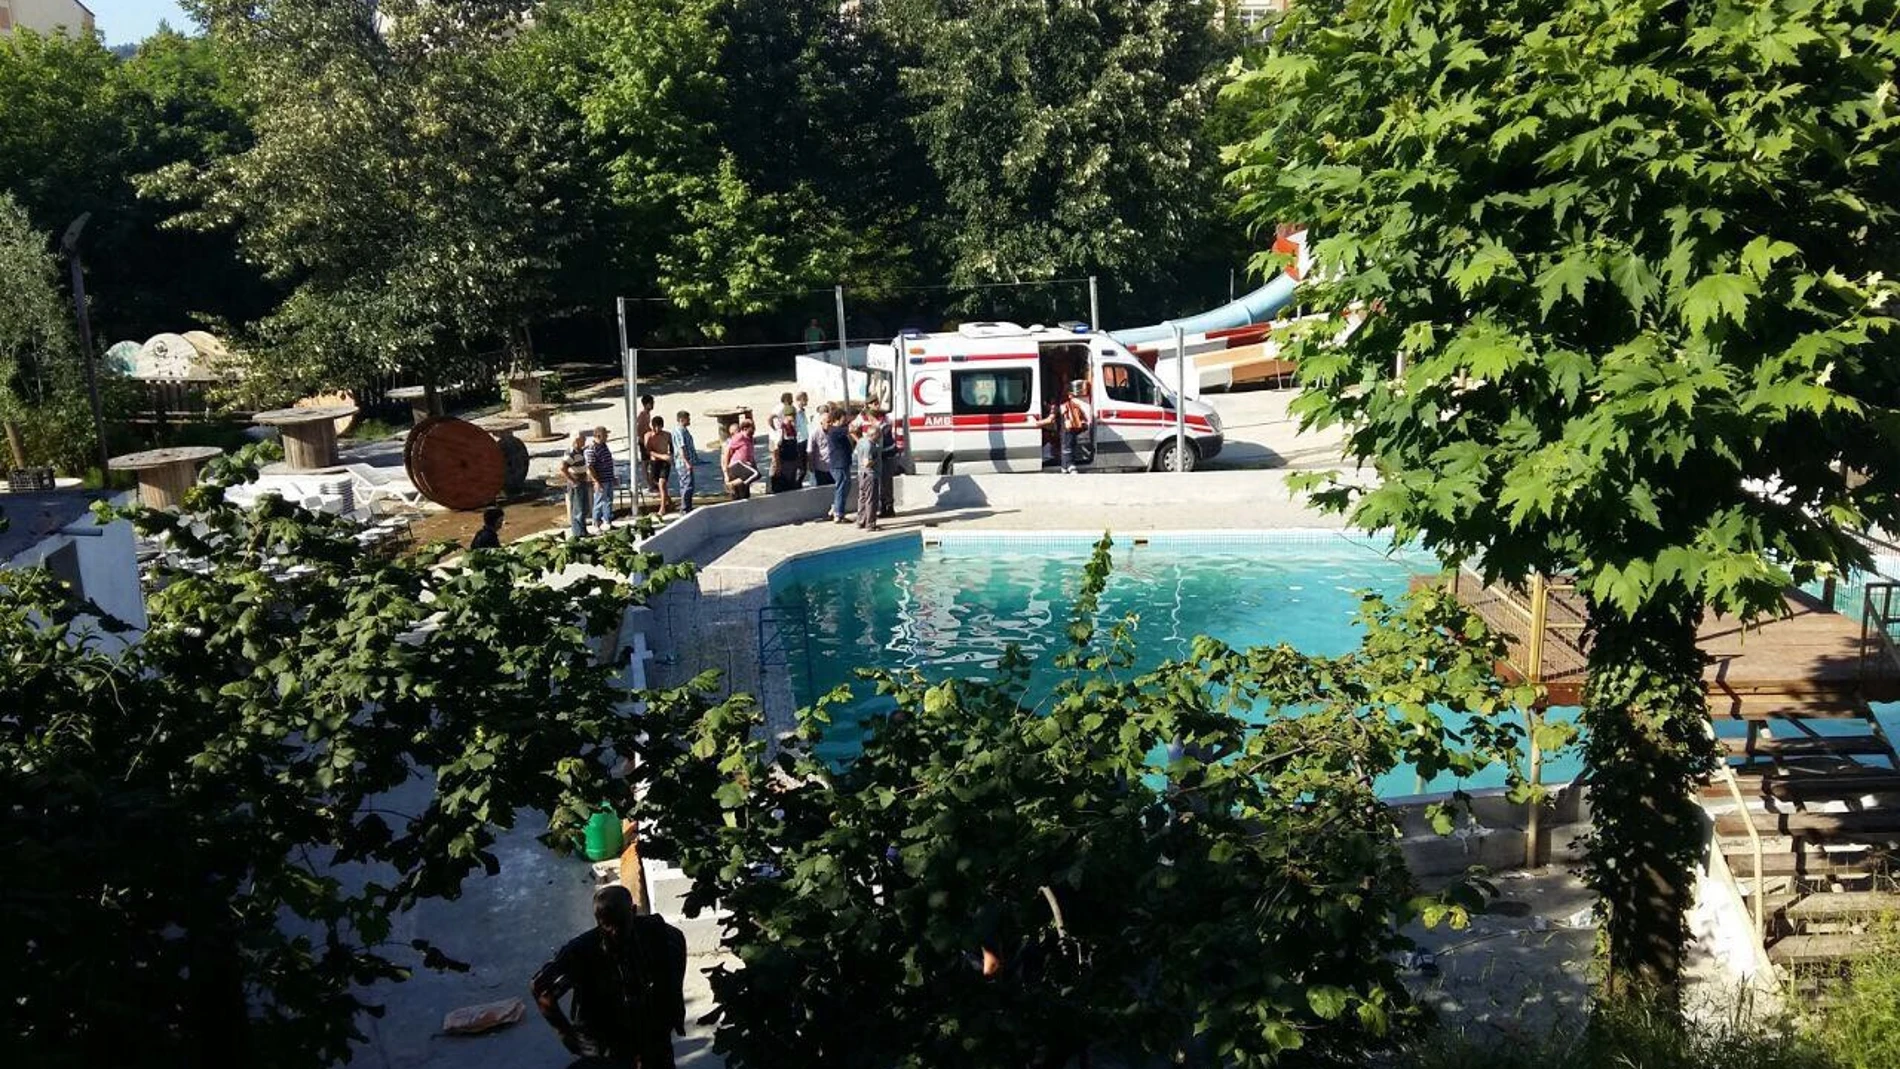 Las autoridades inspeccionan la piscina donde cinco personas han muerto electrocutadas, en Sakarya, Turquía